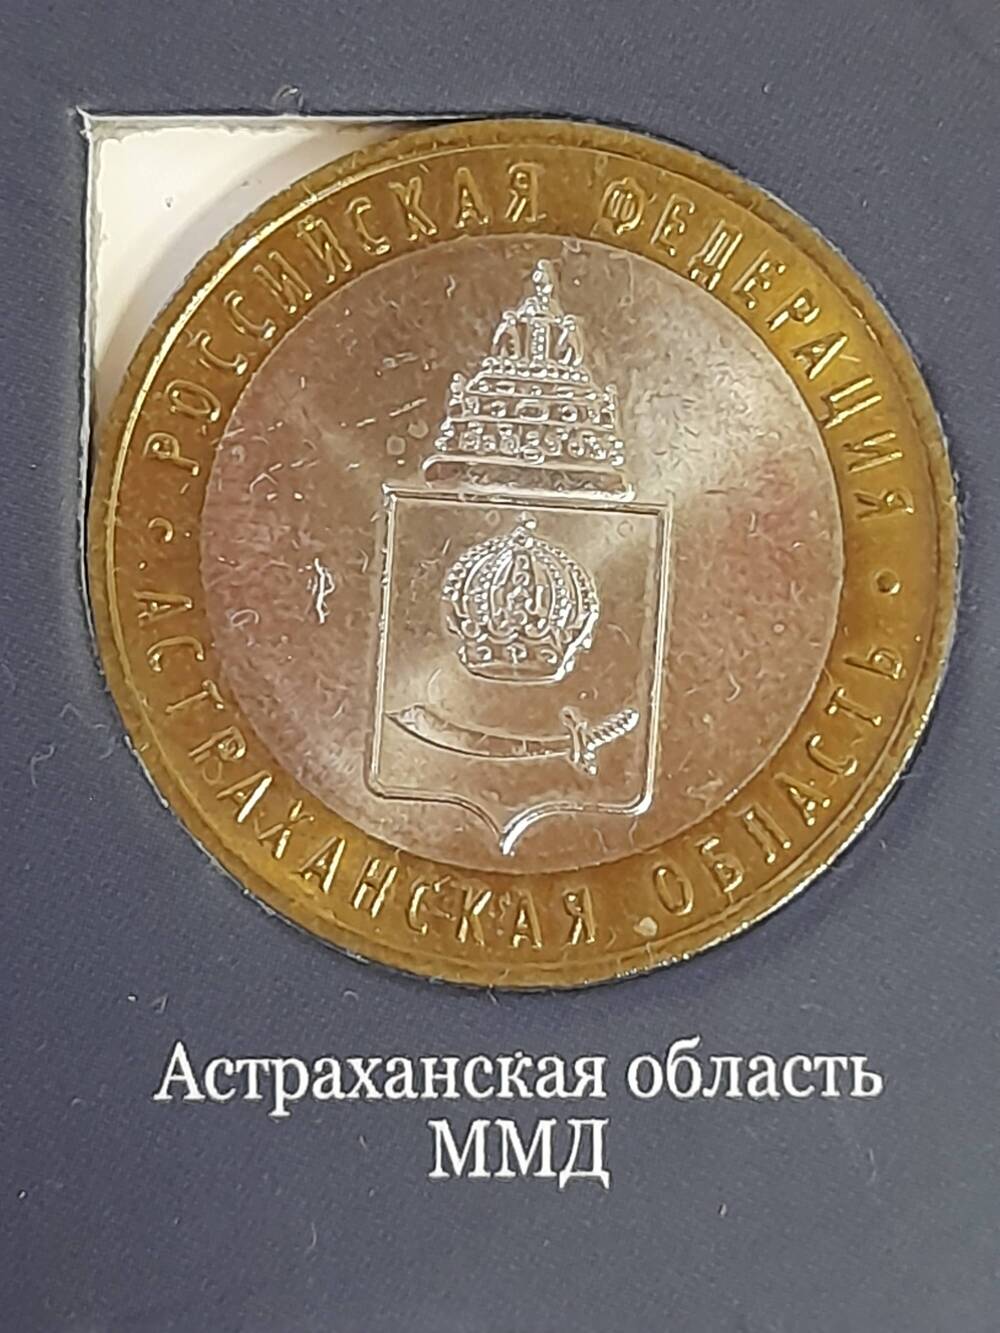 Монета памятная 10 РУБЛЕЙ. Астраханская область 2008 г. Россия